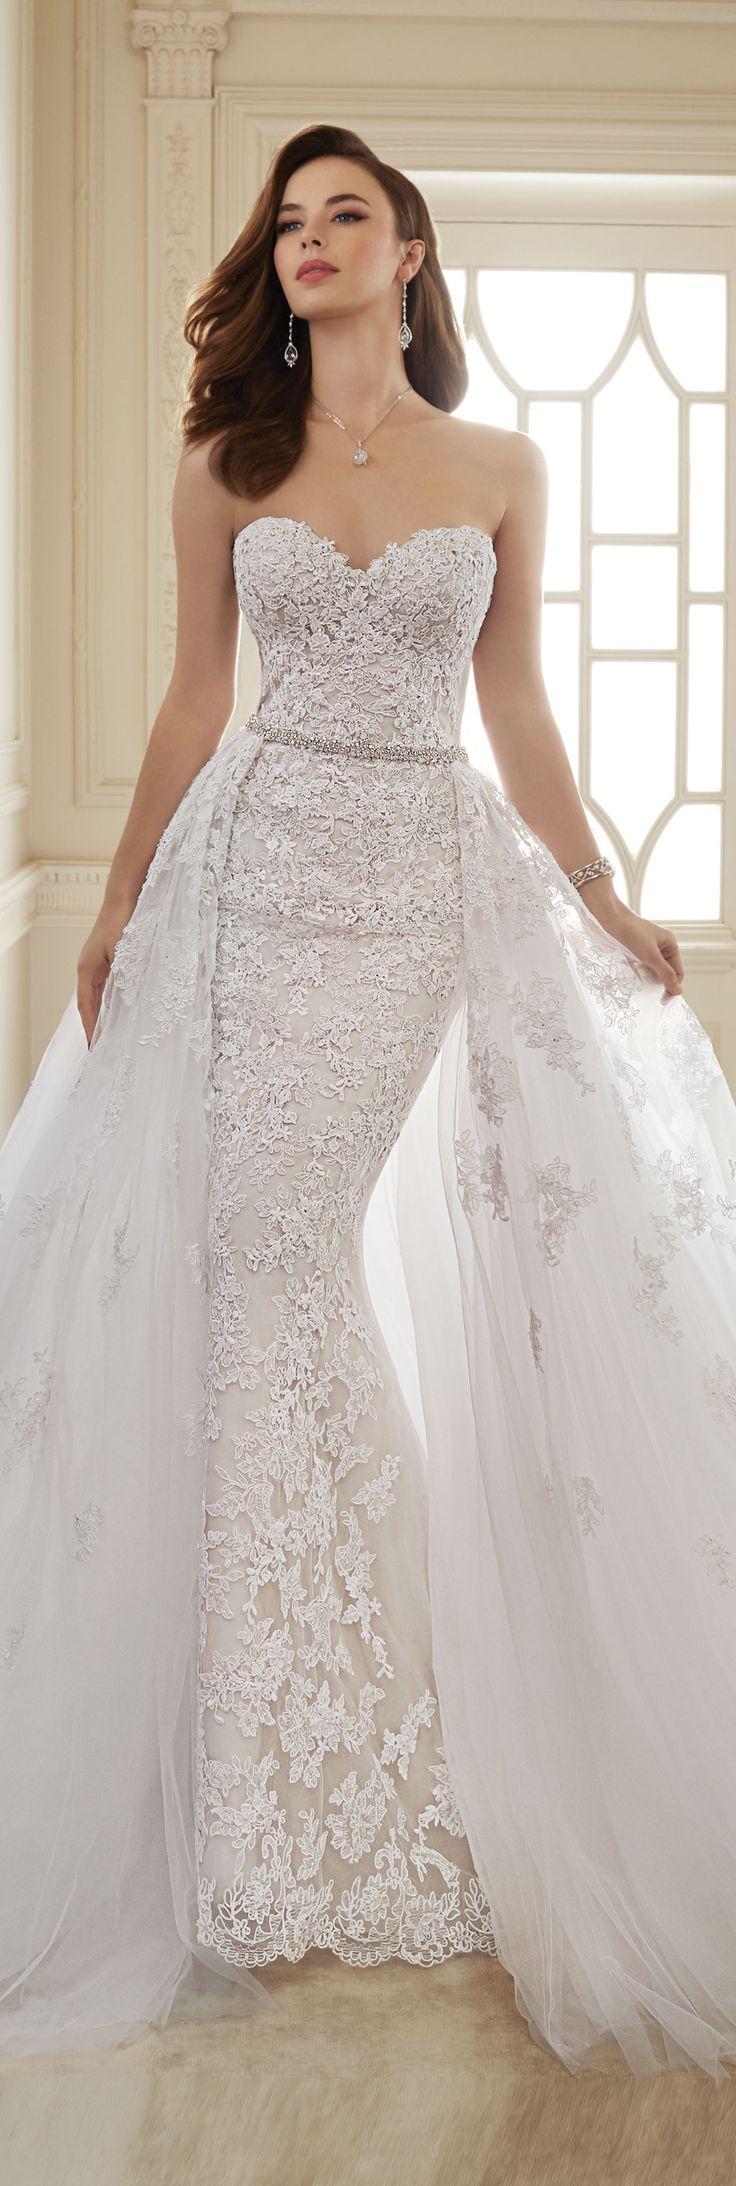 زفاف - Two-Piece Lace & Tulle Wedding Dress - Sophia Tolli Y11652